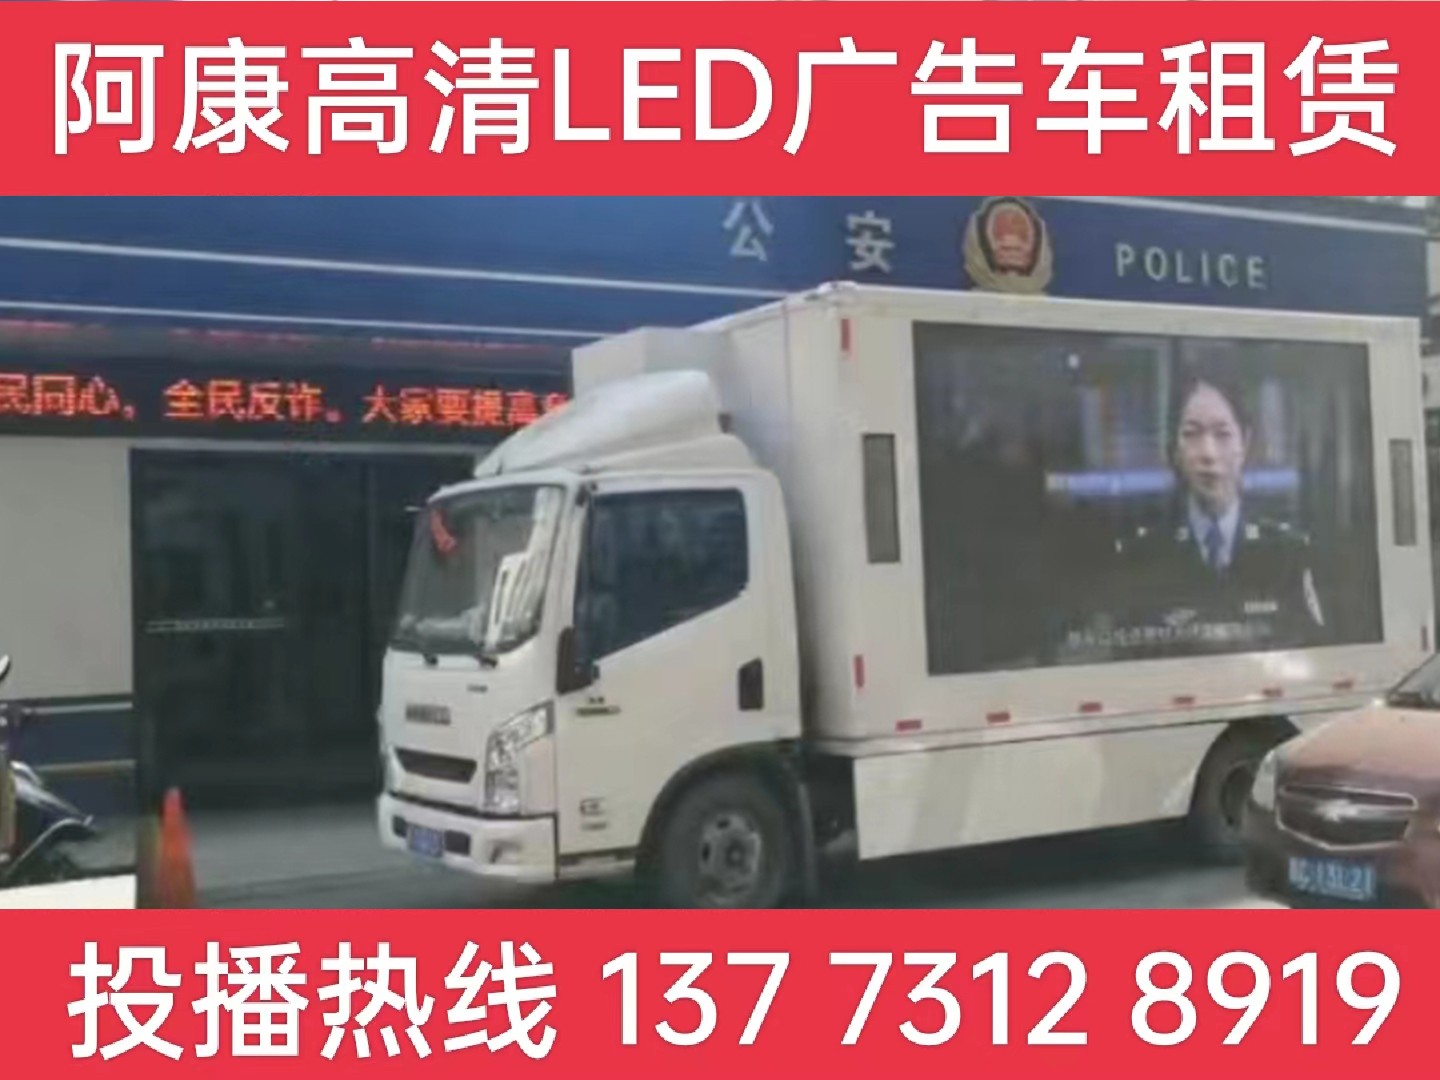 江阴LED广告车租赁-反诈宣传